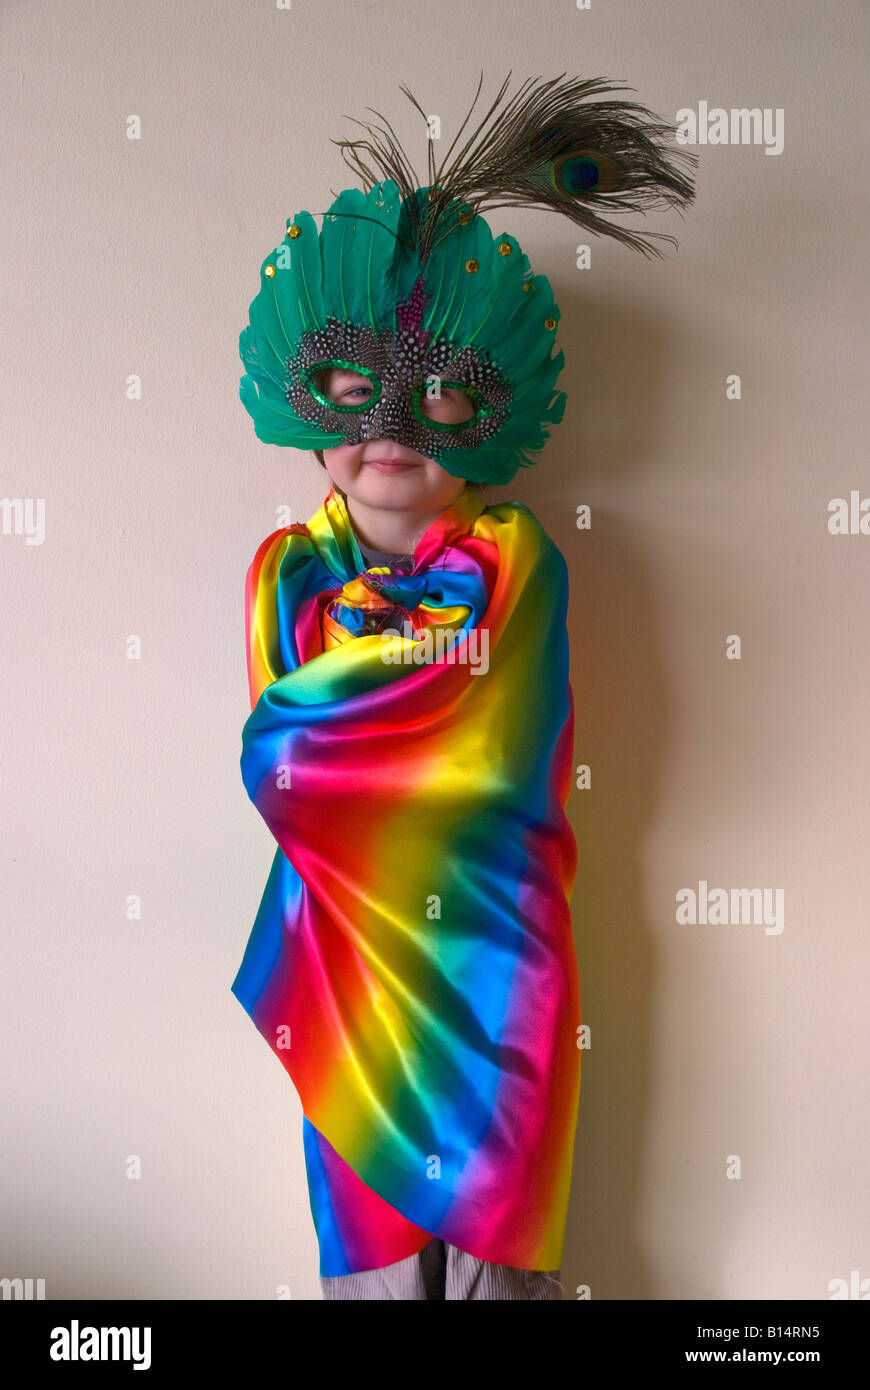 A boy wearing fancy dress a rainbow 